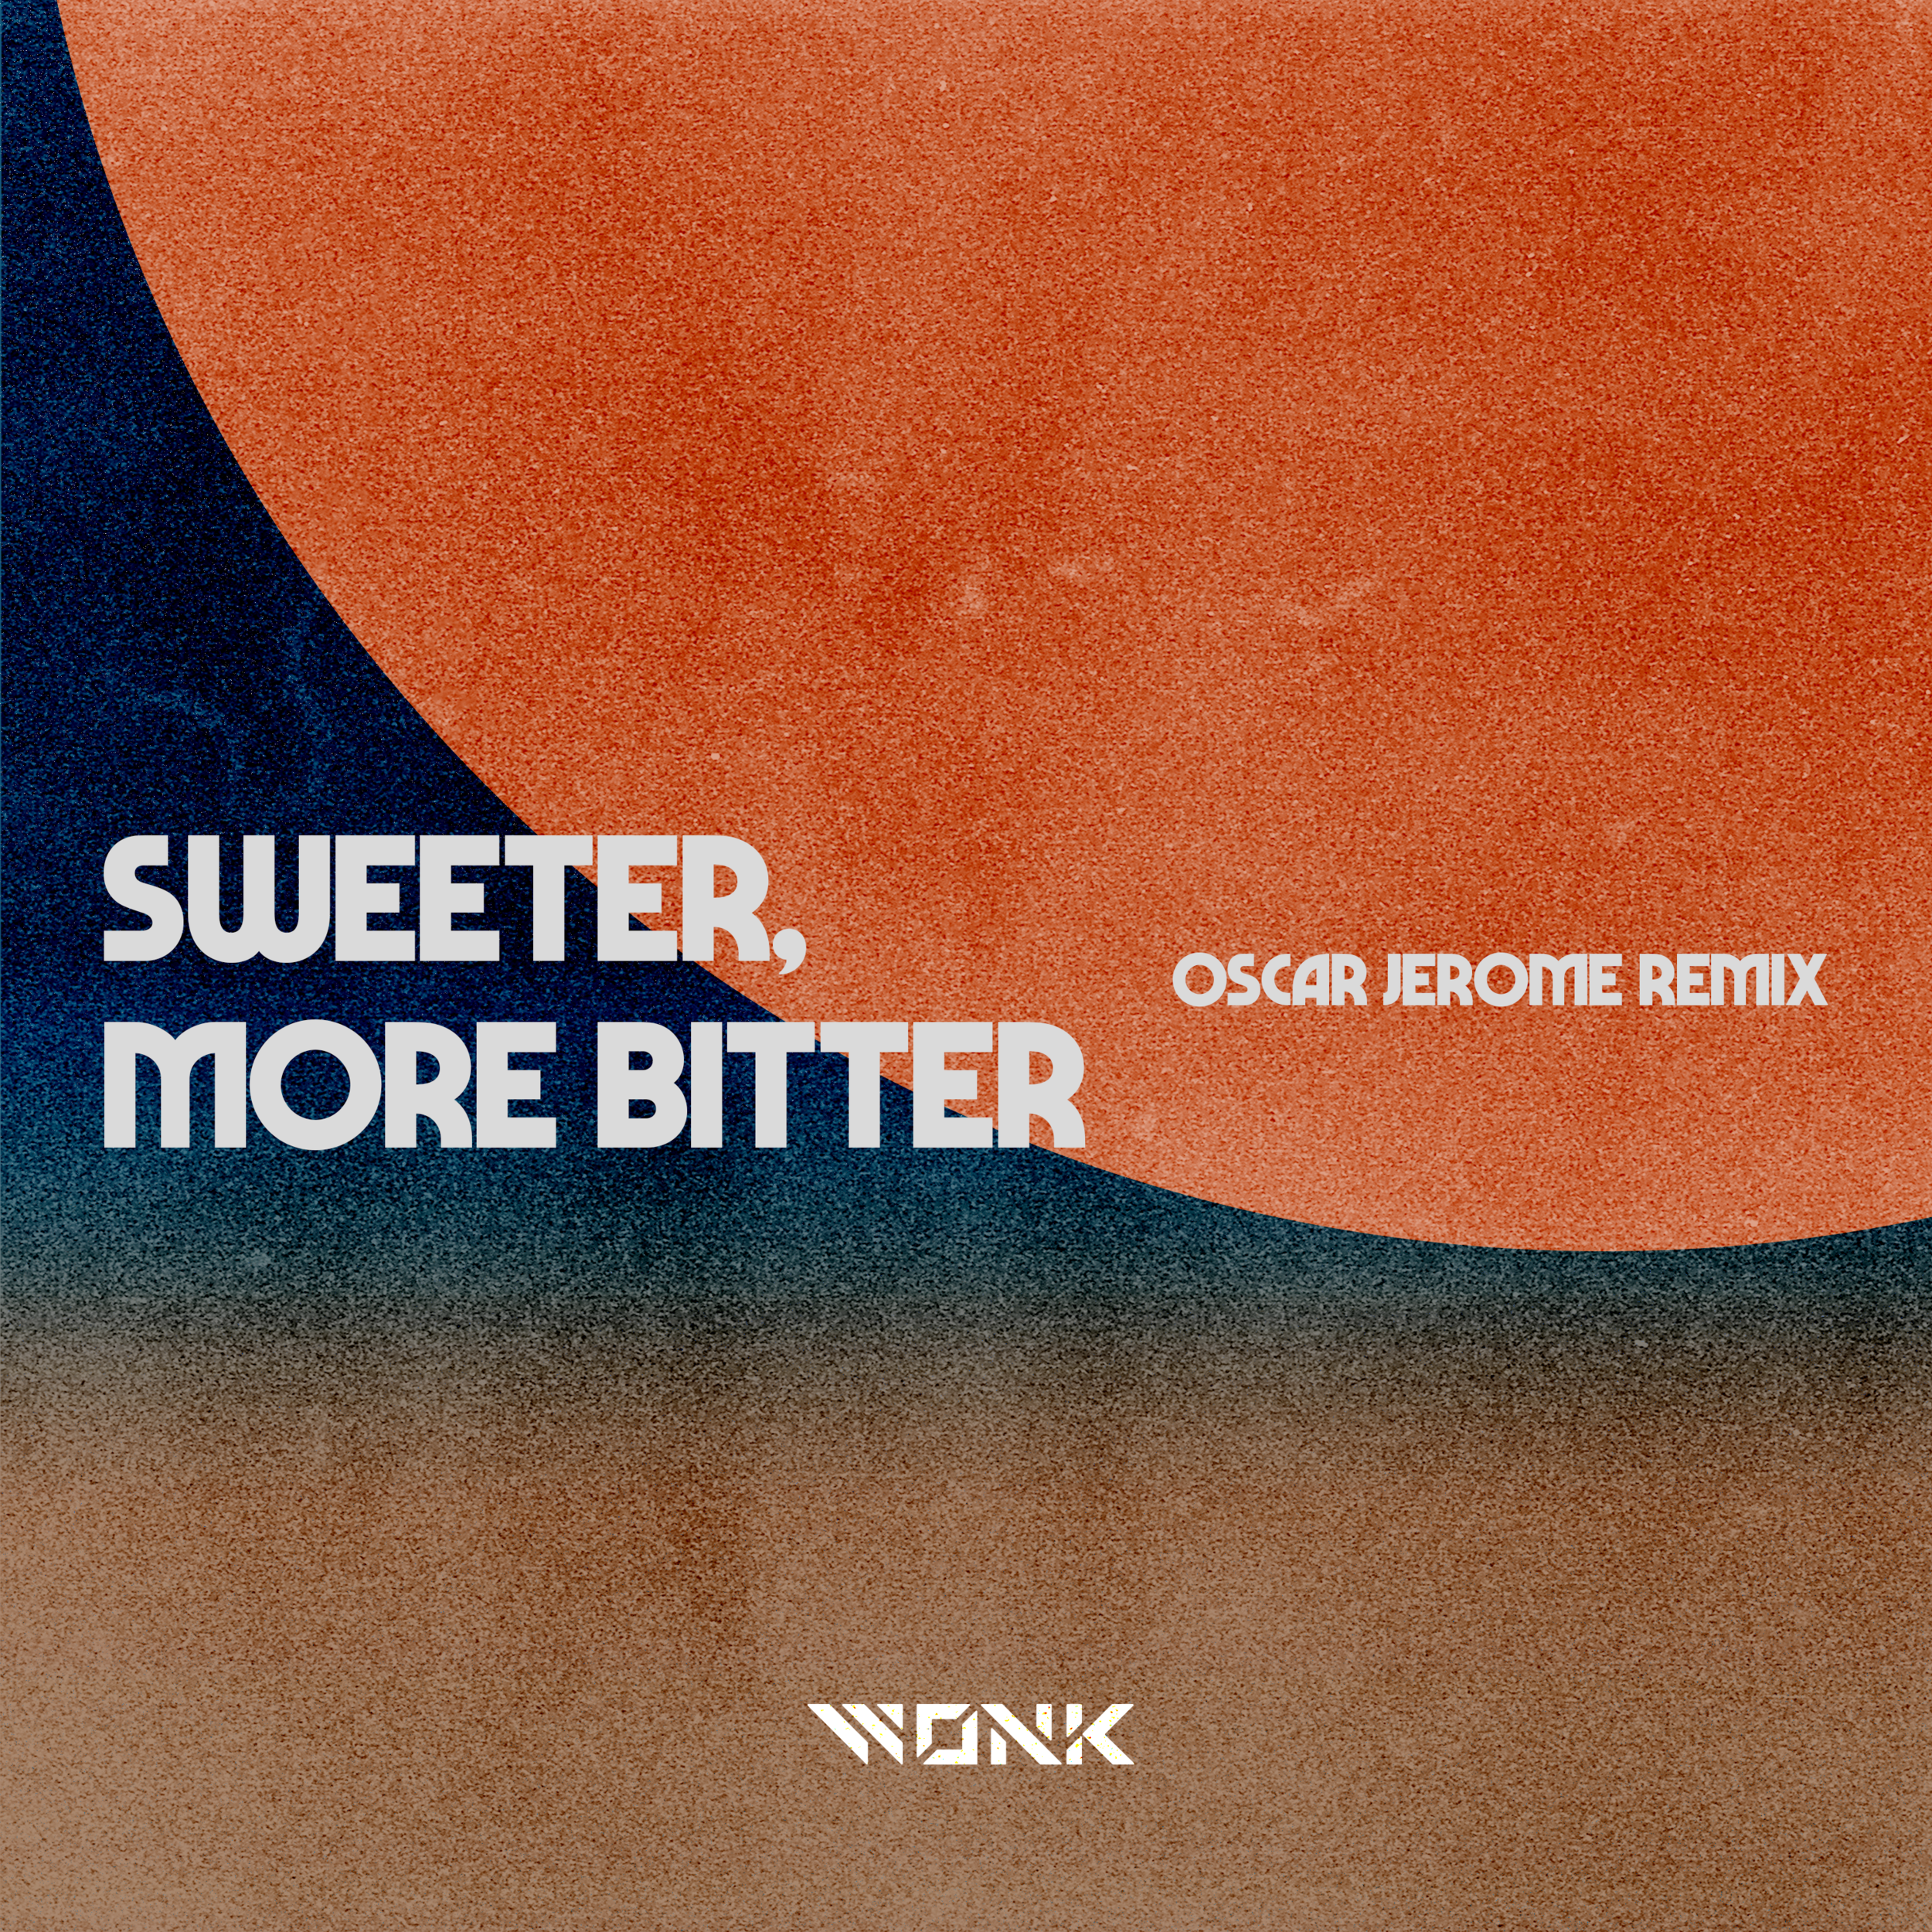 WONK - Sweeter, More Bitter - Oscar Jerome Remix